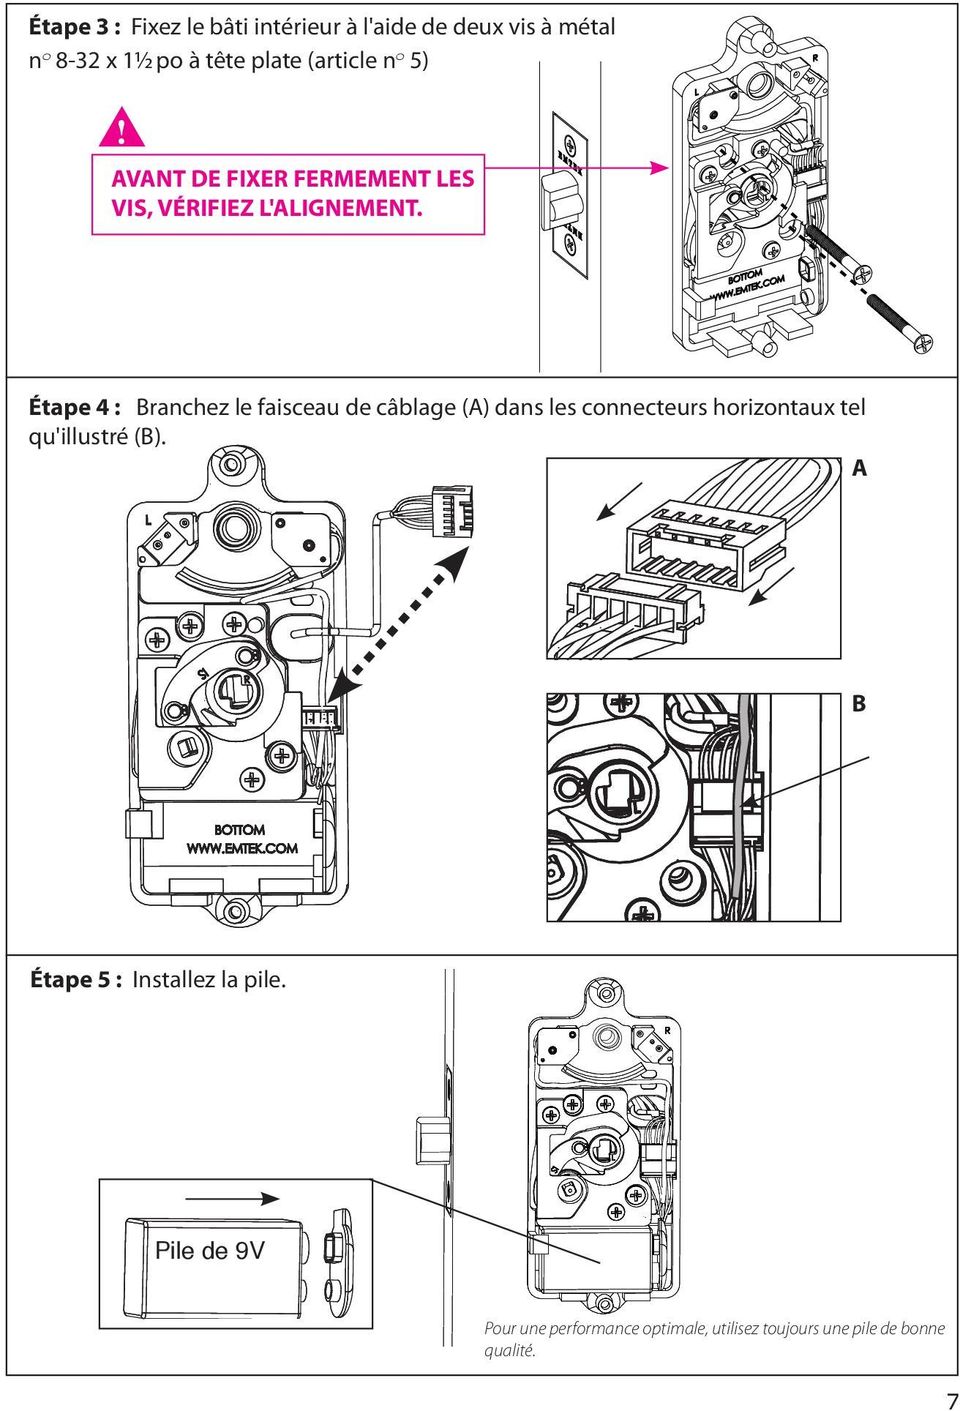 Étape 4 : Branchez le faisceau de câblage (A) dans les connecteurs horizontaux tel qu'illustré